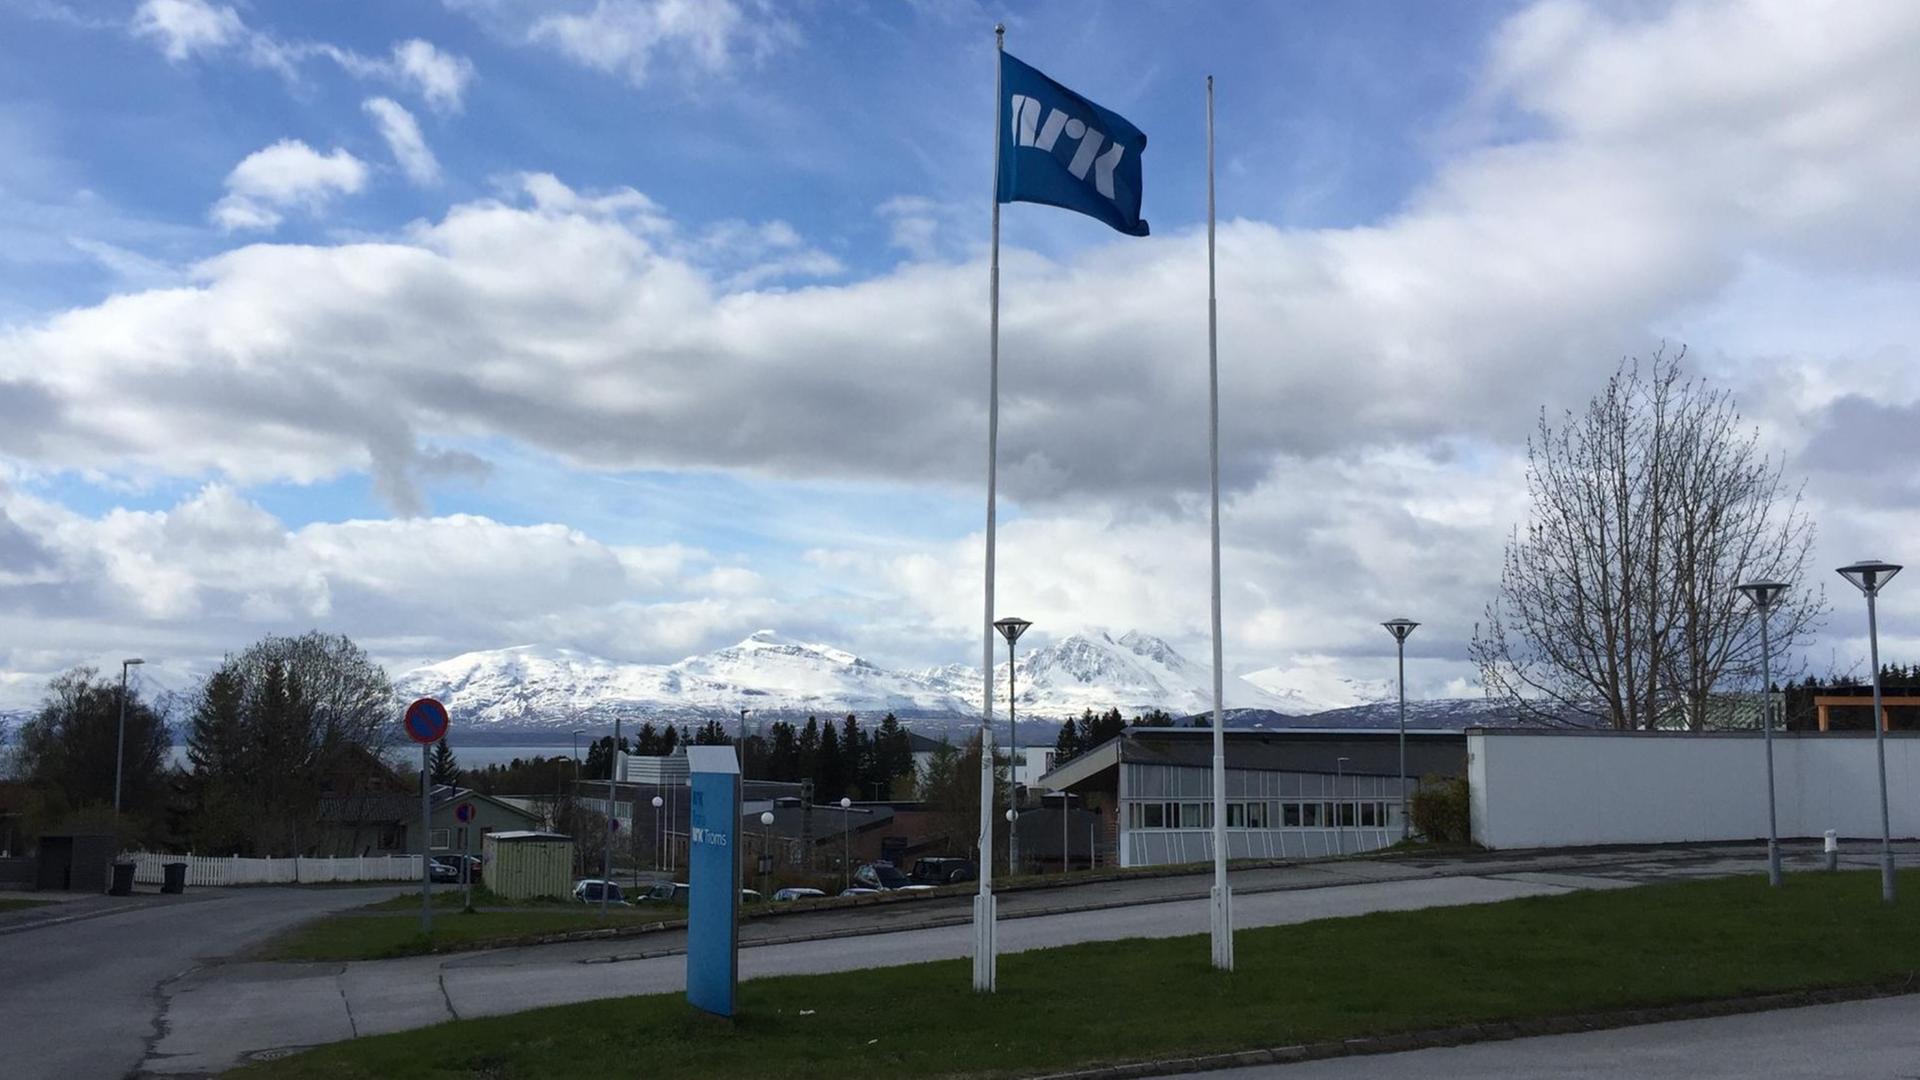 Zu sehen ist eine Fahne vor dem Redaktionsgebäude des norwegischen Rundfunksenders NRK in Tromsø. Im Hintergrund sind schneebedeckte Berge zu erkennen.